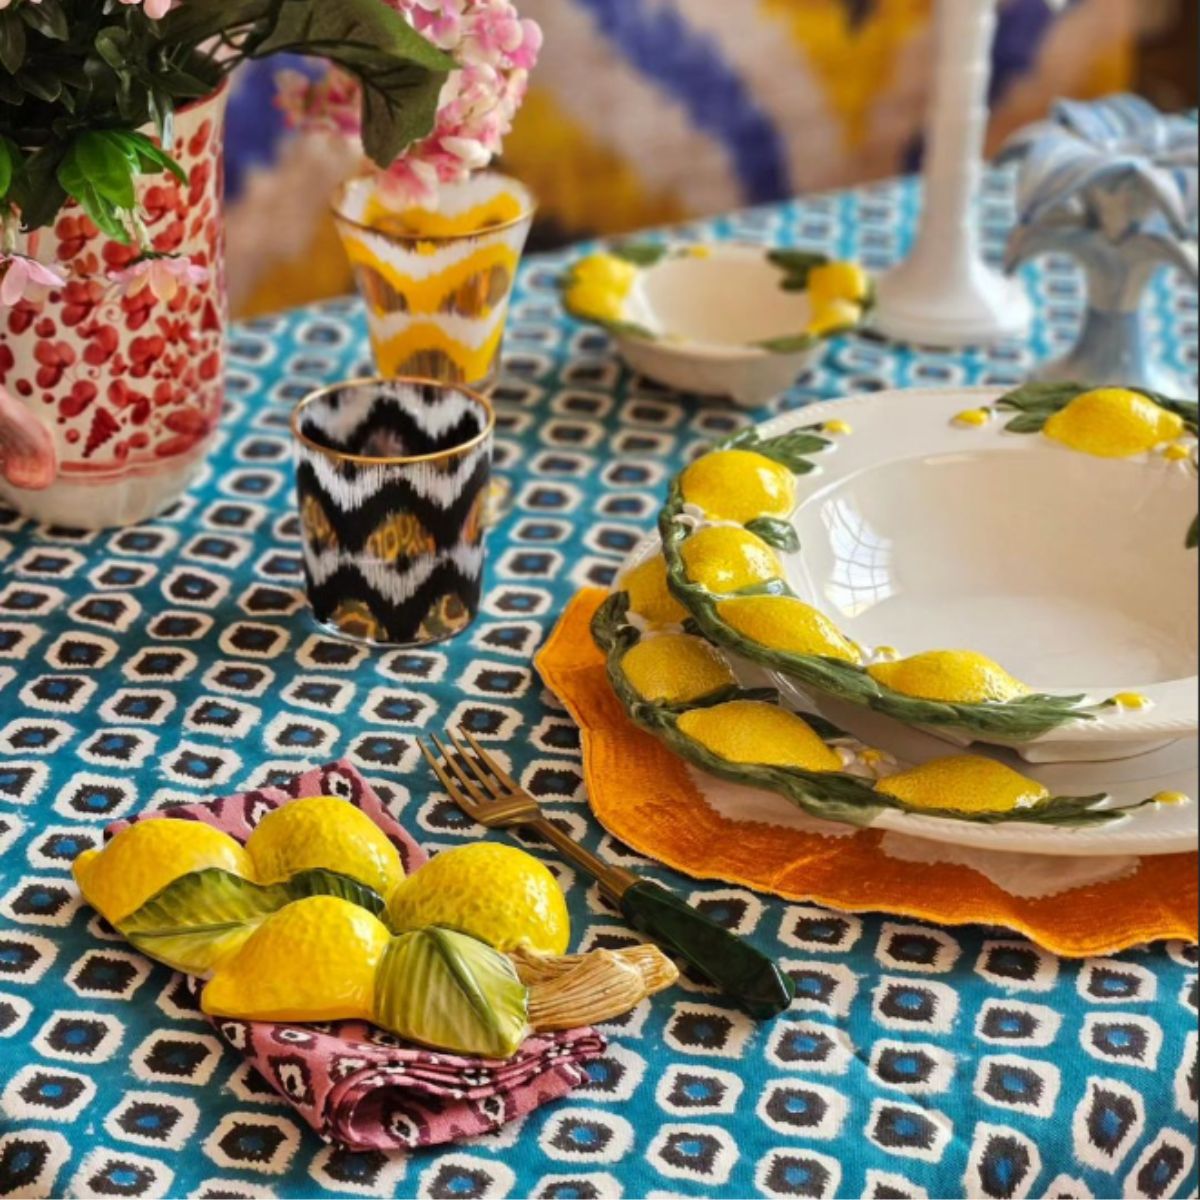 Hand Painted Lemon Ceramic Pasta Bowl - Les Ottomans